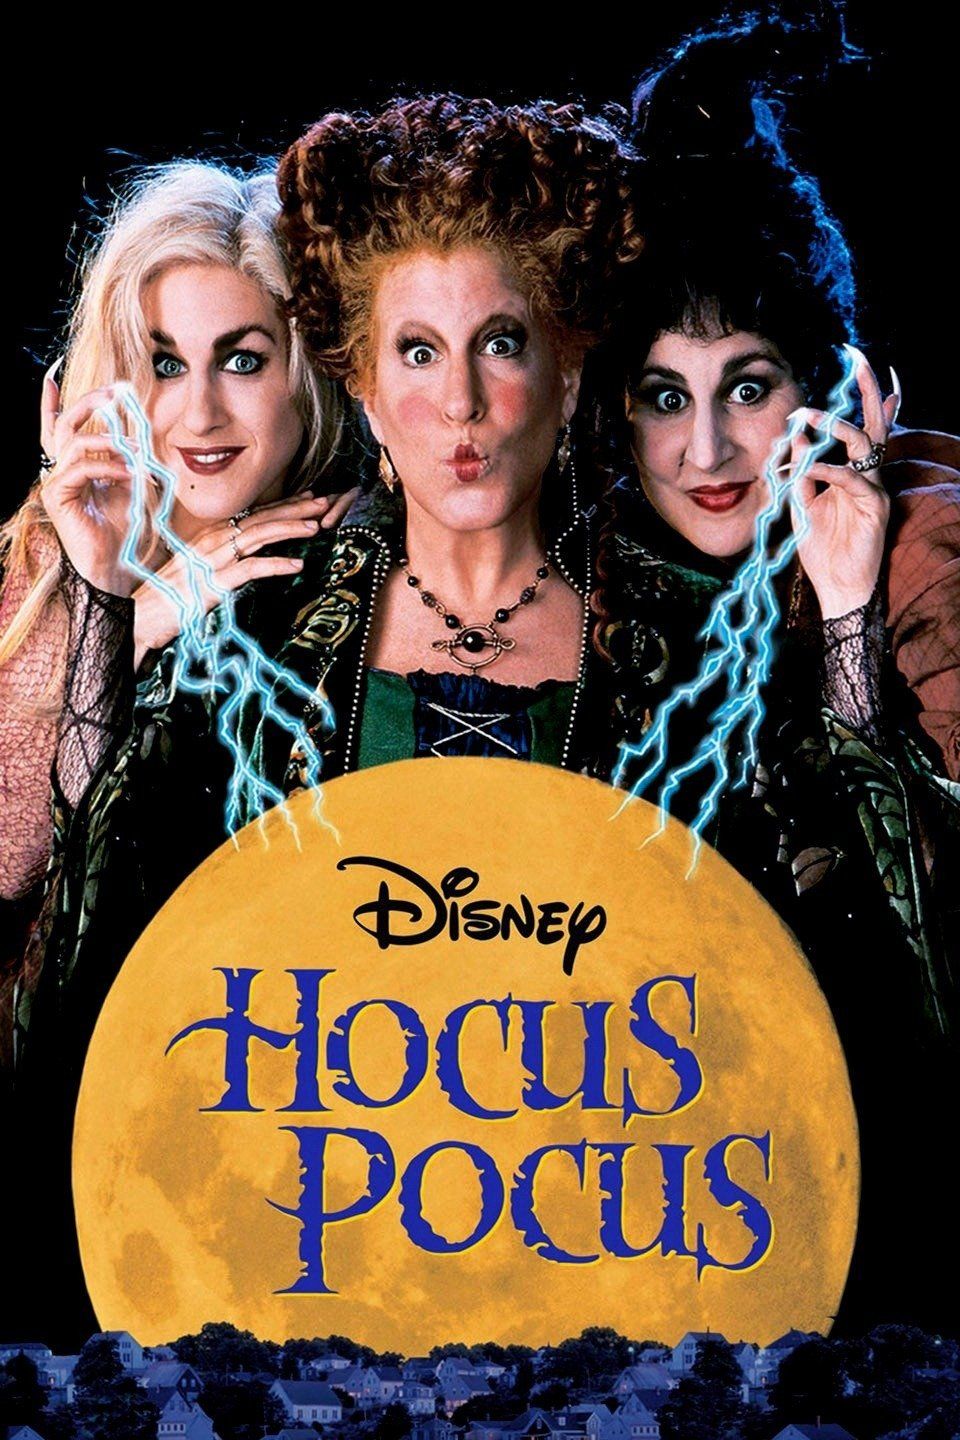 hocus-pocus-1 na disney + hallowstream